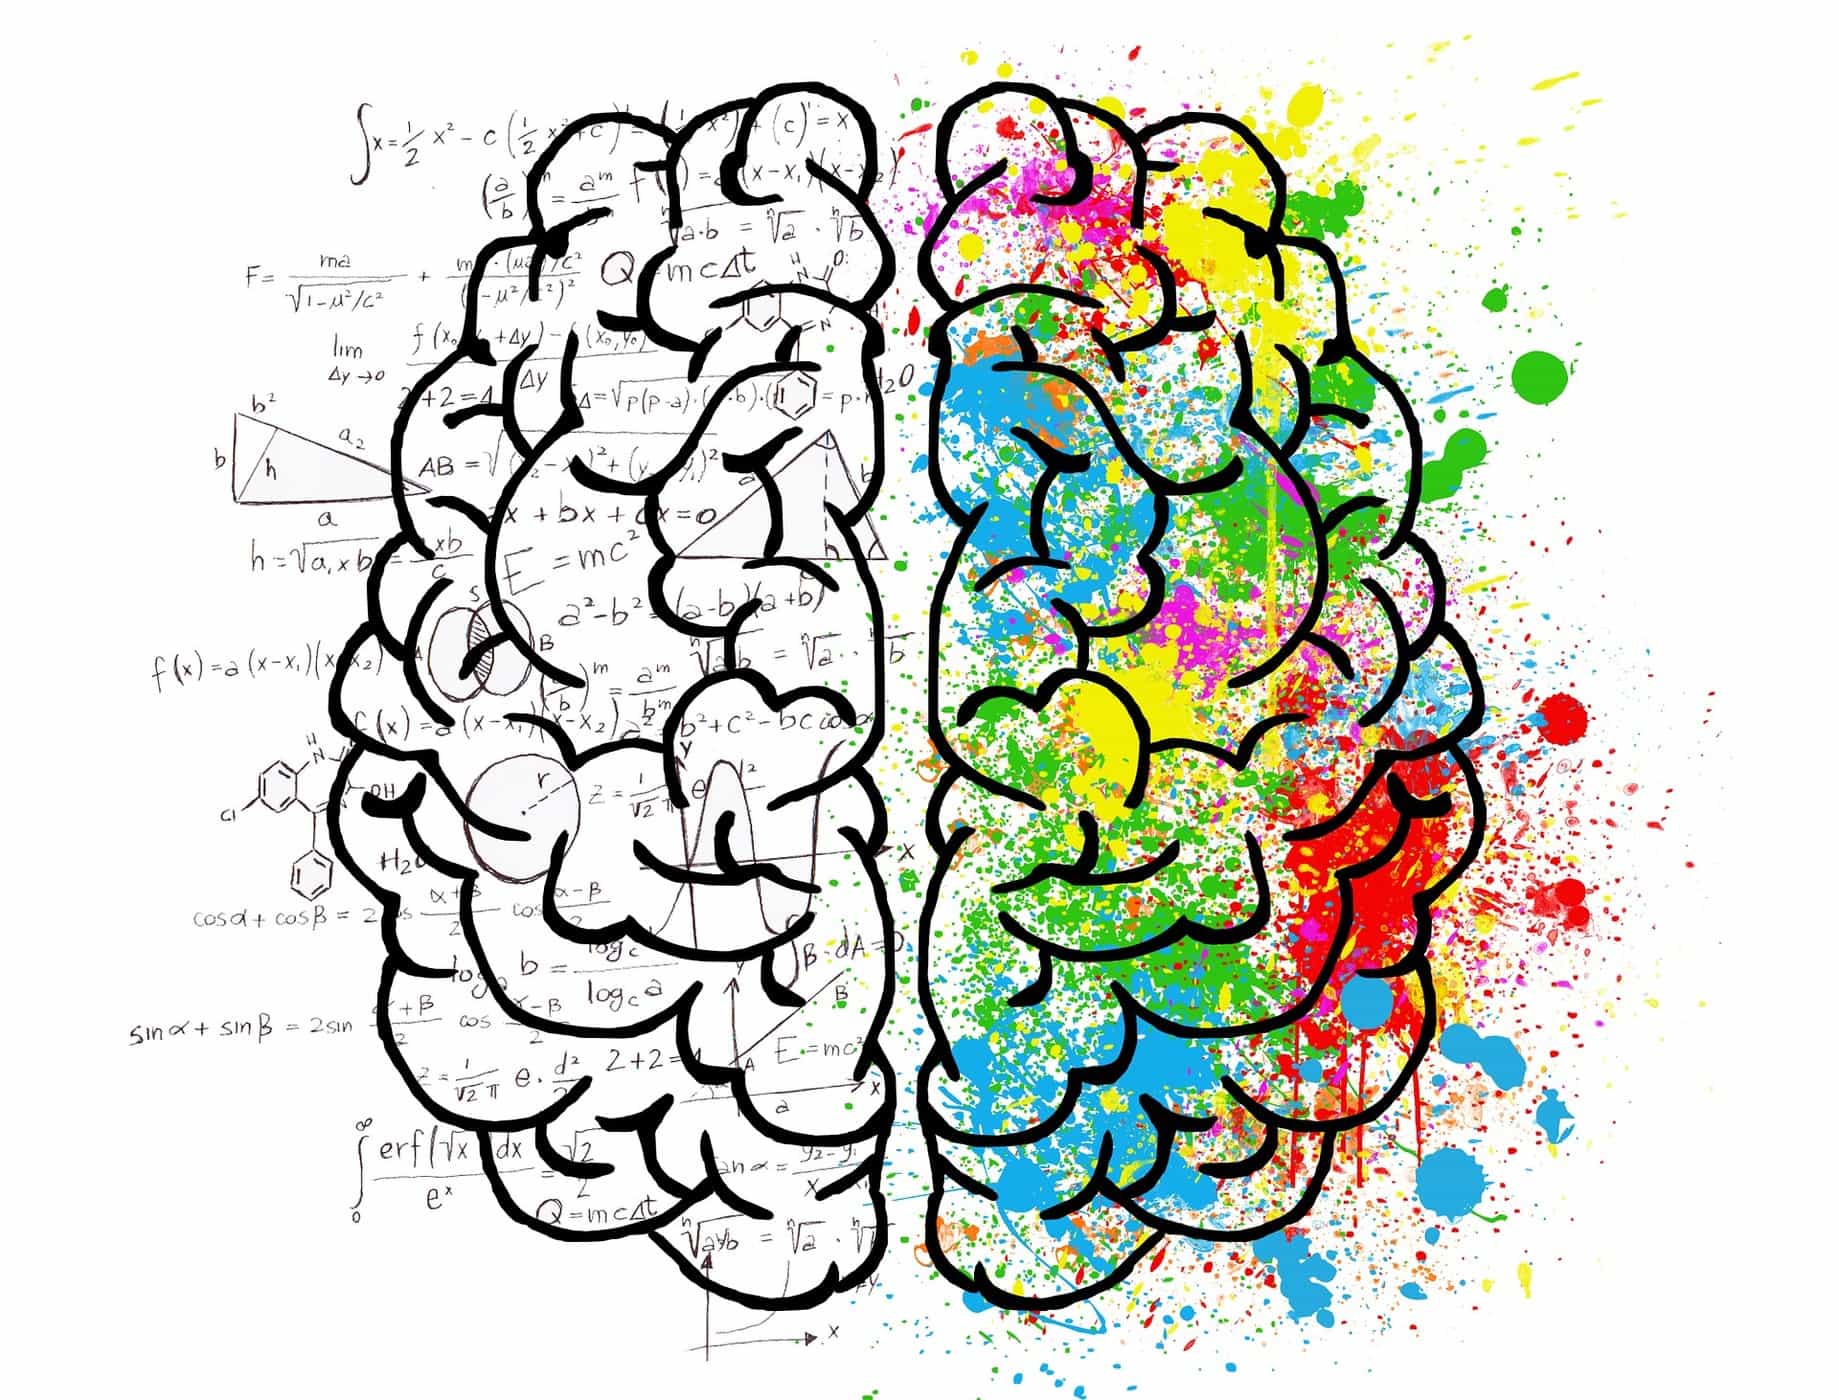 האם זה נכון שתפקידי המוח הימני והמוח השמאלי שונים? מהם ההבדלים?